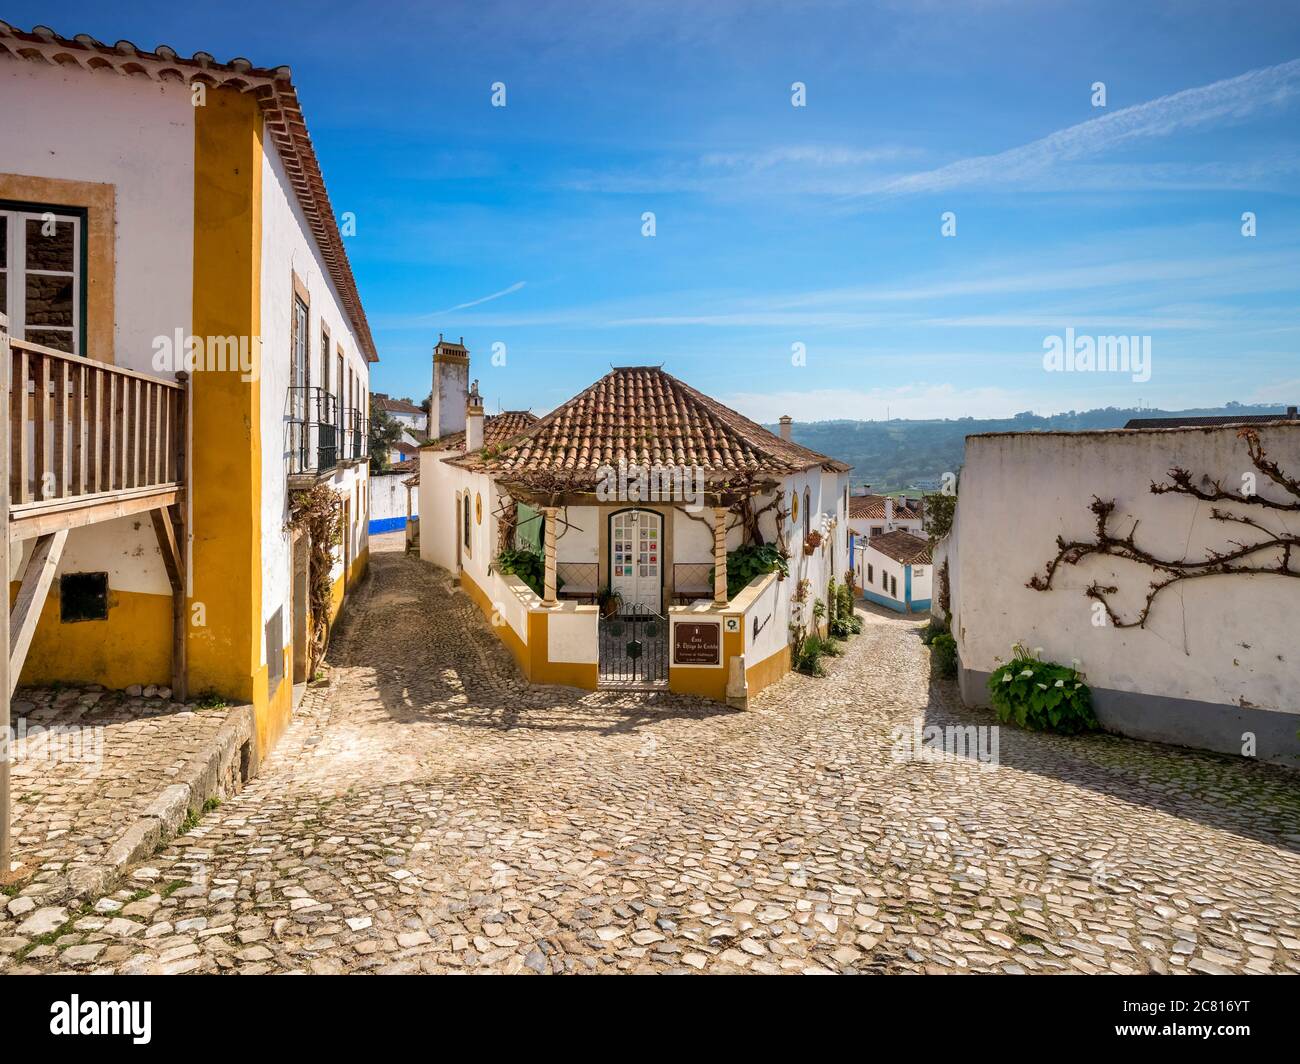 11 mars 2020 : Obidos, Portugal - rues et maisons de la ville fortifiée d'Obidos. Banque D'Images